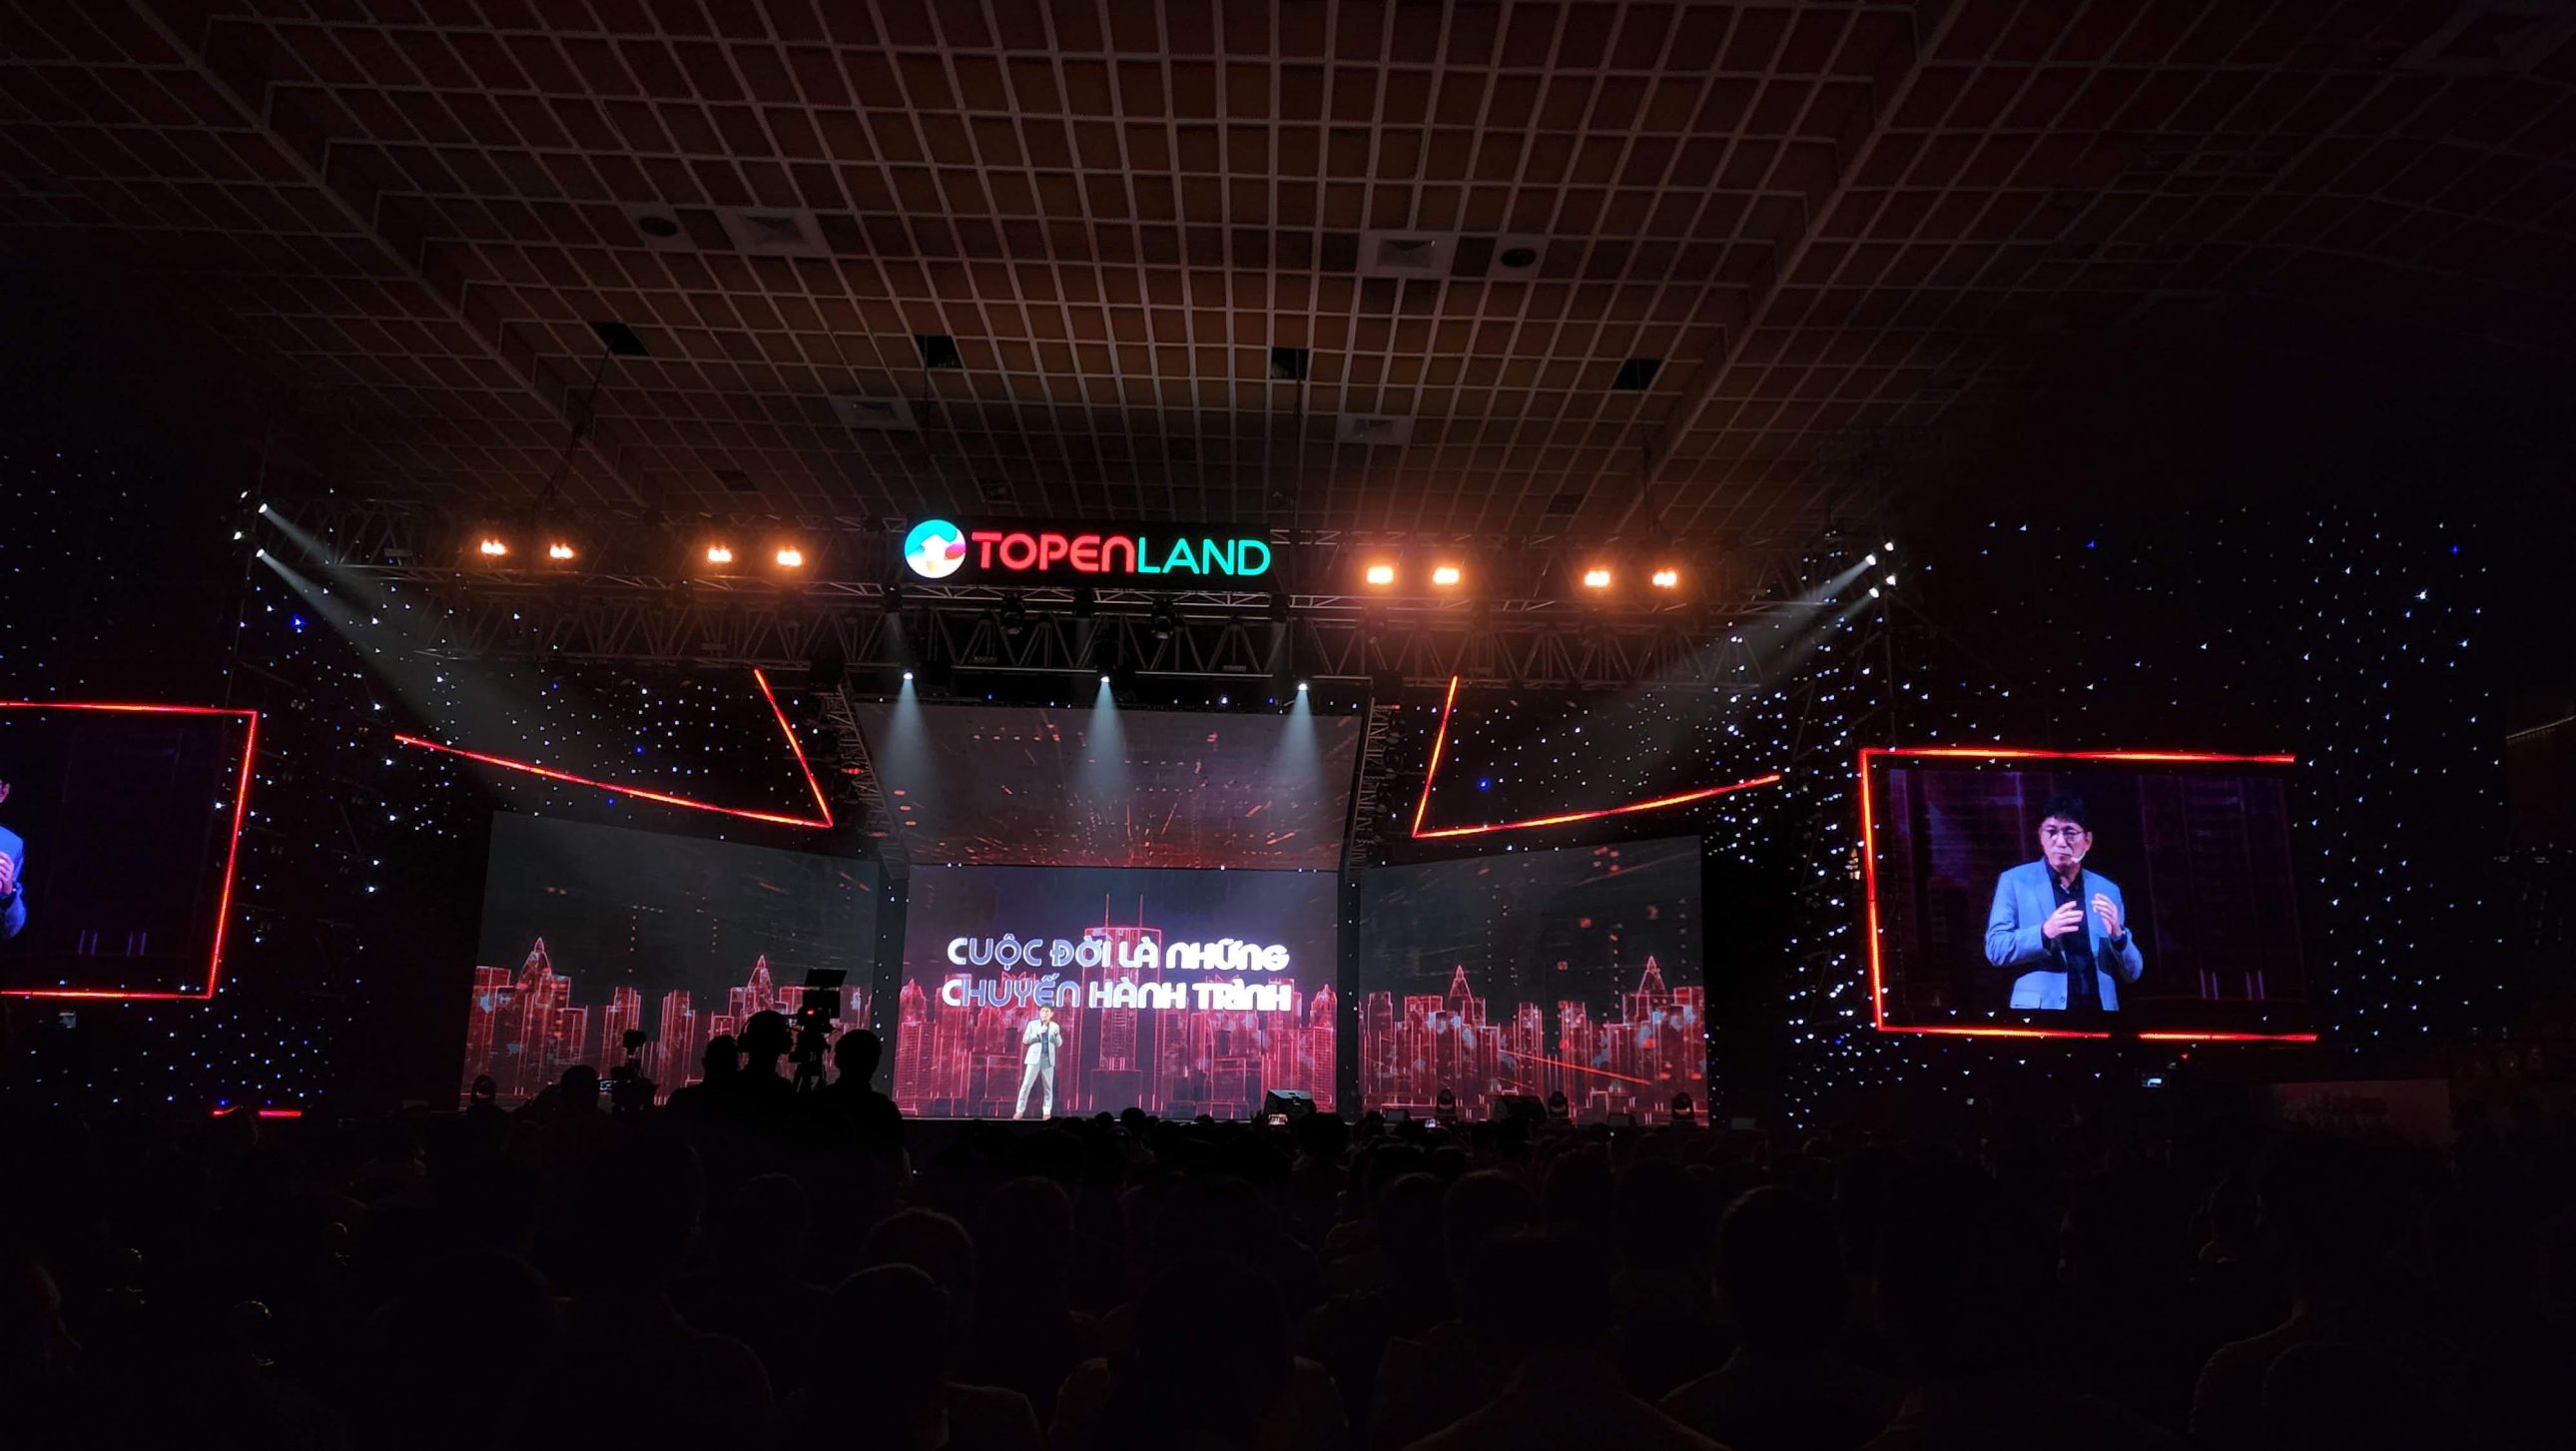 Nền tảng TopenLand ra mắt, kỳ vọng giao dịch bất động sản an toàn và thông minh - 20220706 103629